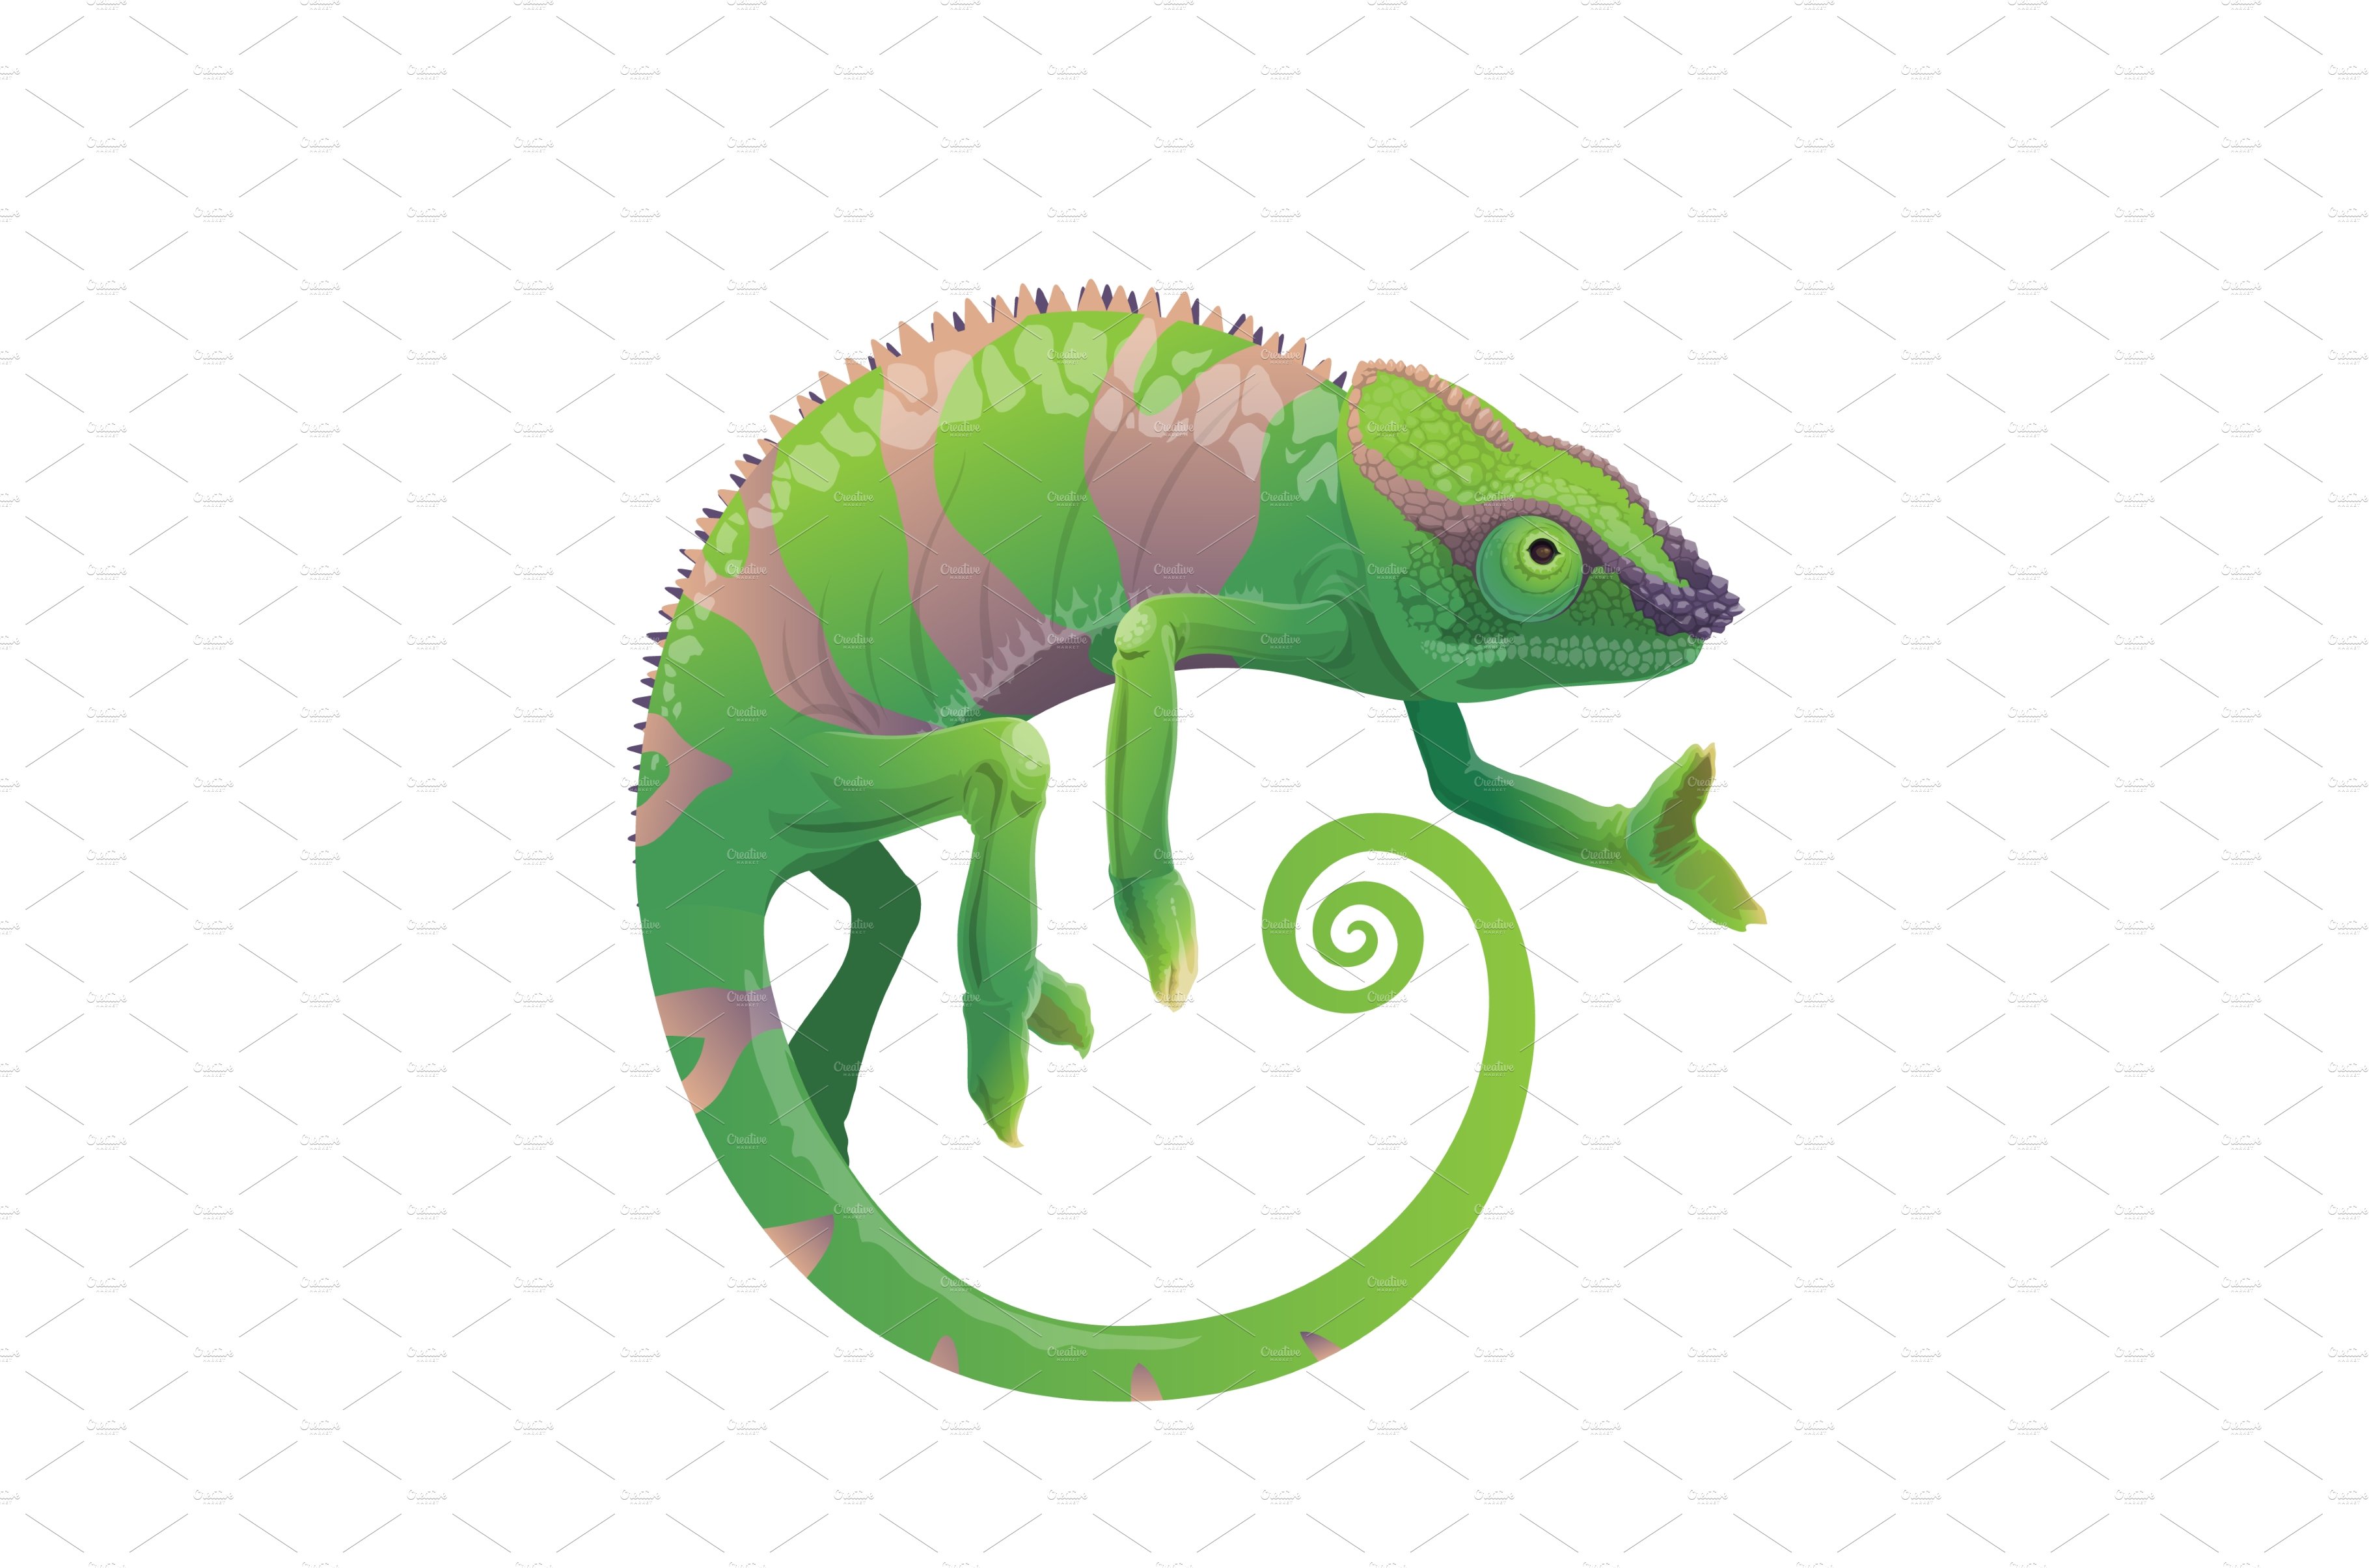 Chameleon green lizard cover image.